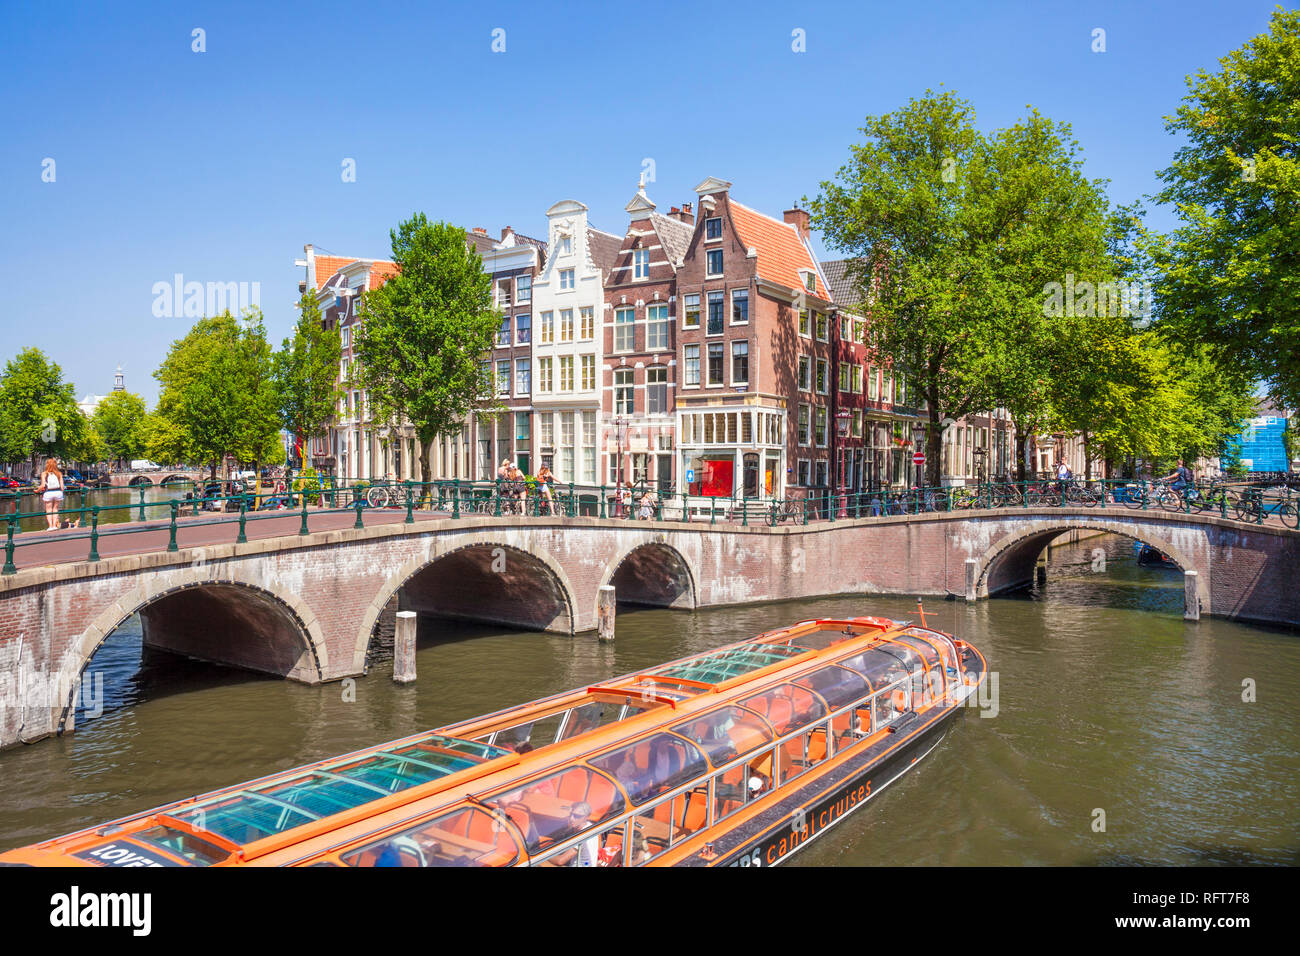 Kanal tour Boot und Brücken an der Kreuzung der Leidsegracht Kanal und Keizergraht Kanal, Amsterdam, Nordholland, Niederlande, Europa Stockfoto